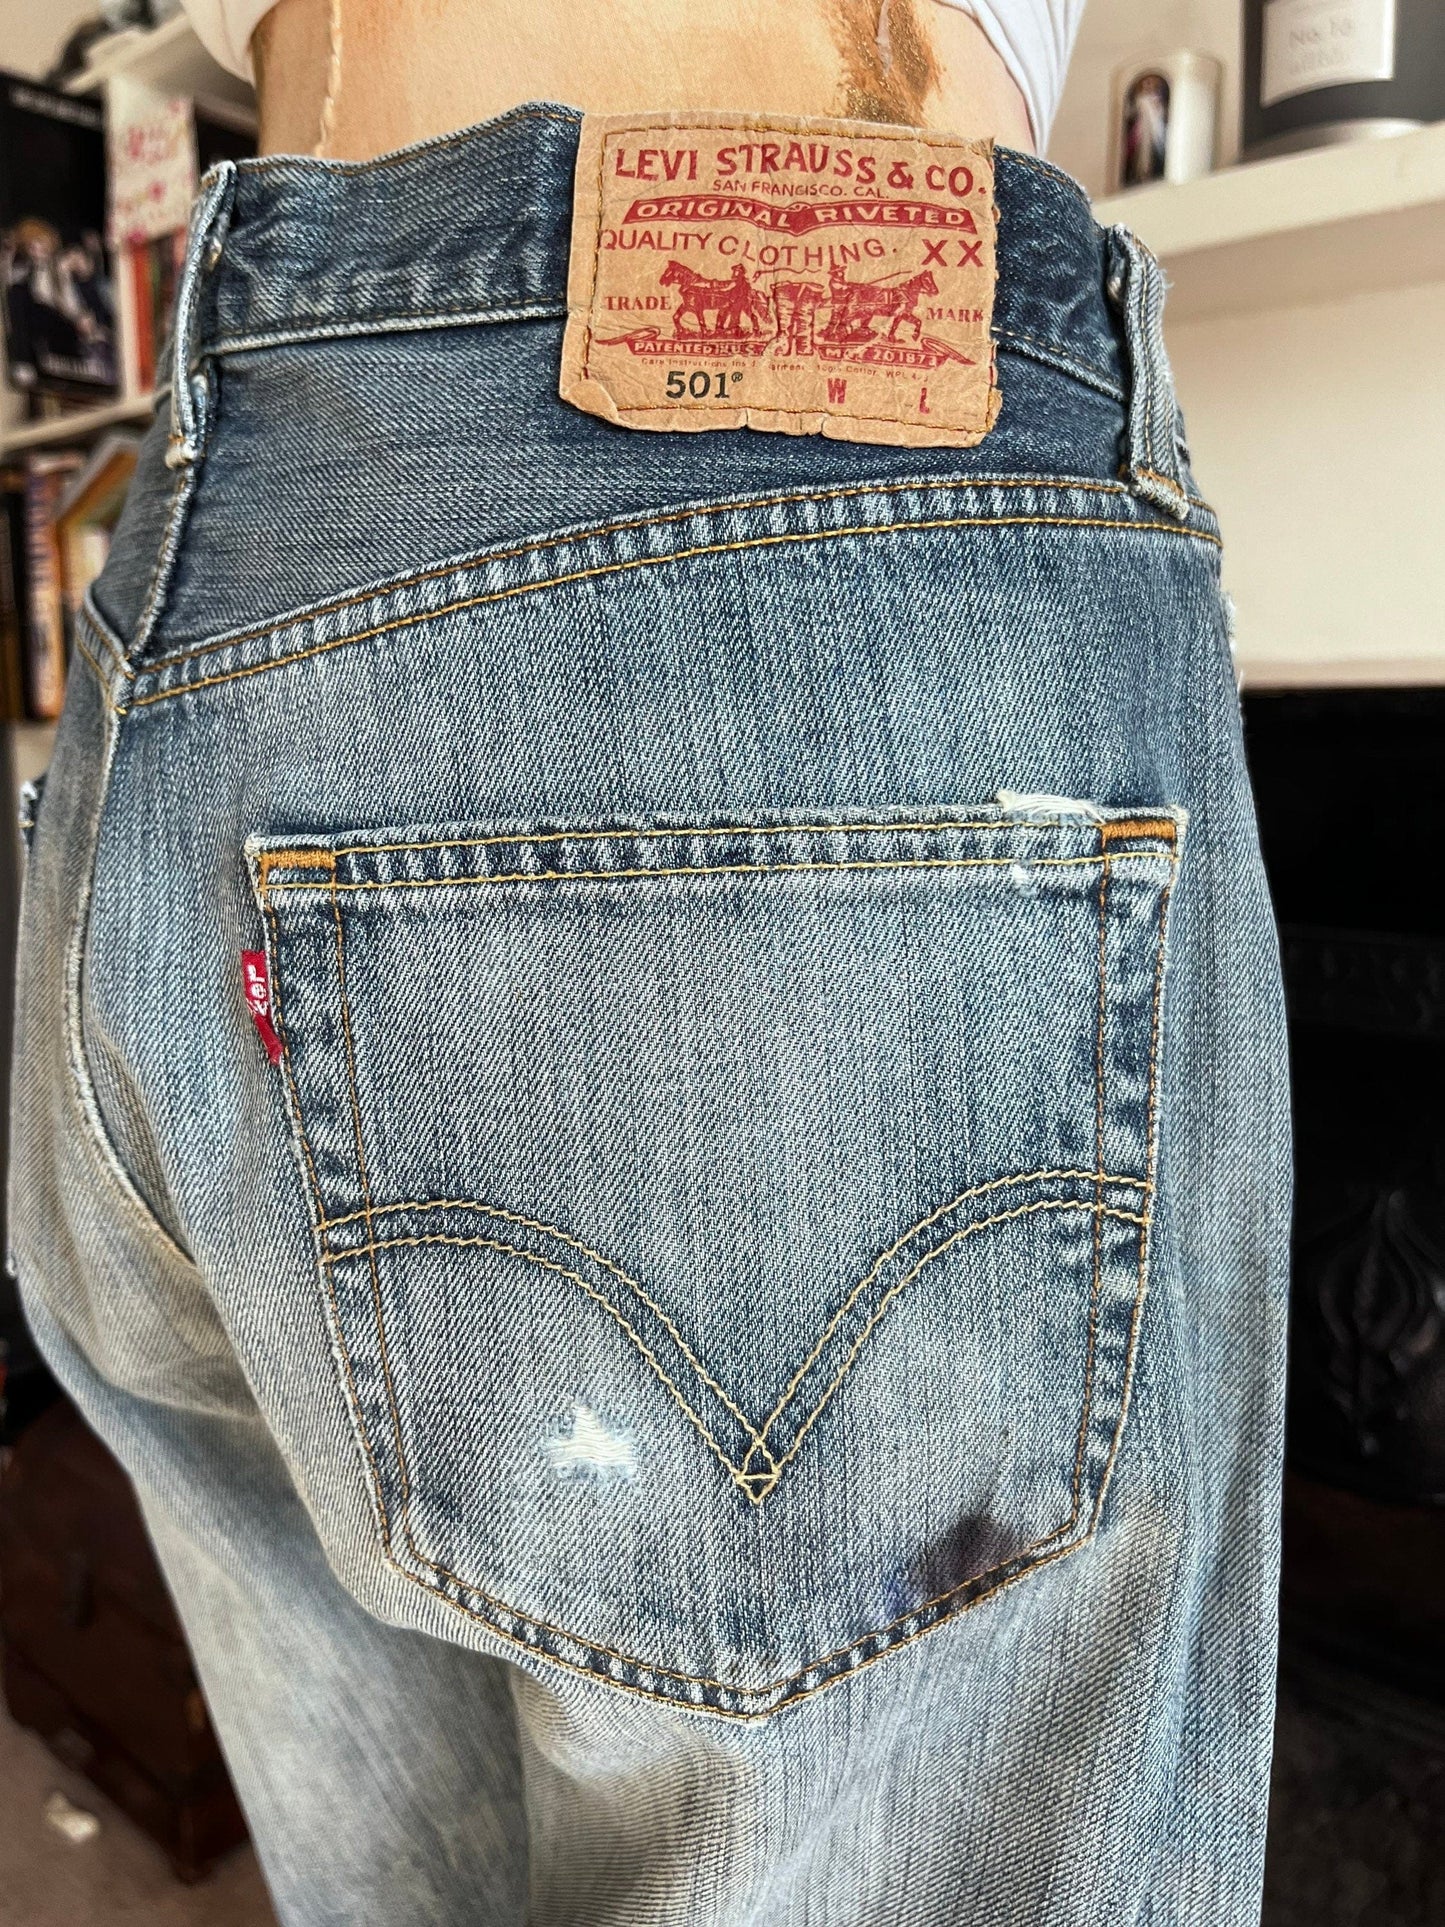 Vintage Levi 501 Jeans - light stone wash denim jeans  - Levi Jeans Original 501 Button Fly  W32 L31